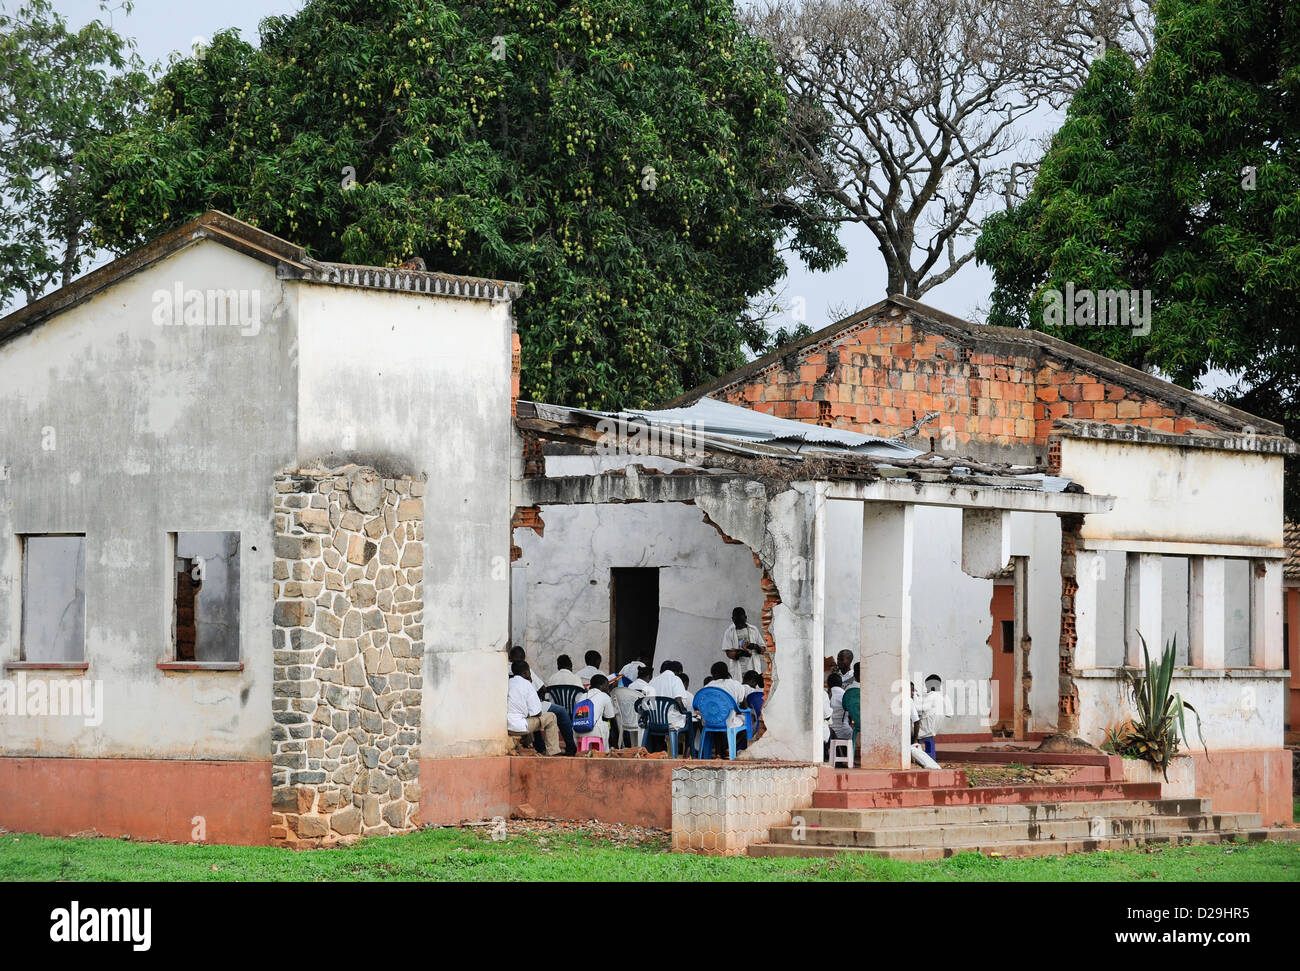 ANGOLA Kwanza Sul, Kinder während des Bürgerkrieges zerstörten Schulgebäude im Dorf Sao Pedro, wegen Korruption gibt es keine Mittel von der Regierung für den Wiederaufbau Stockfoto